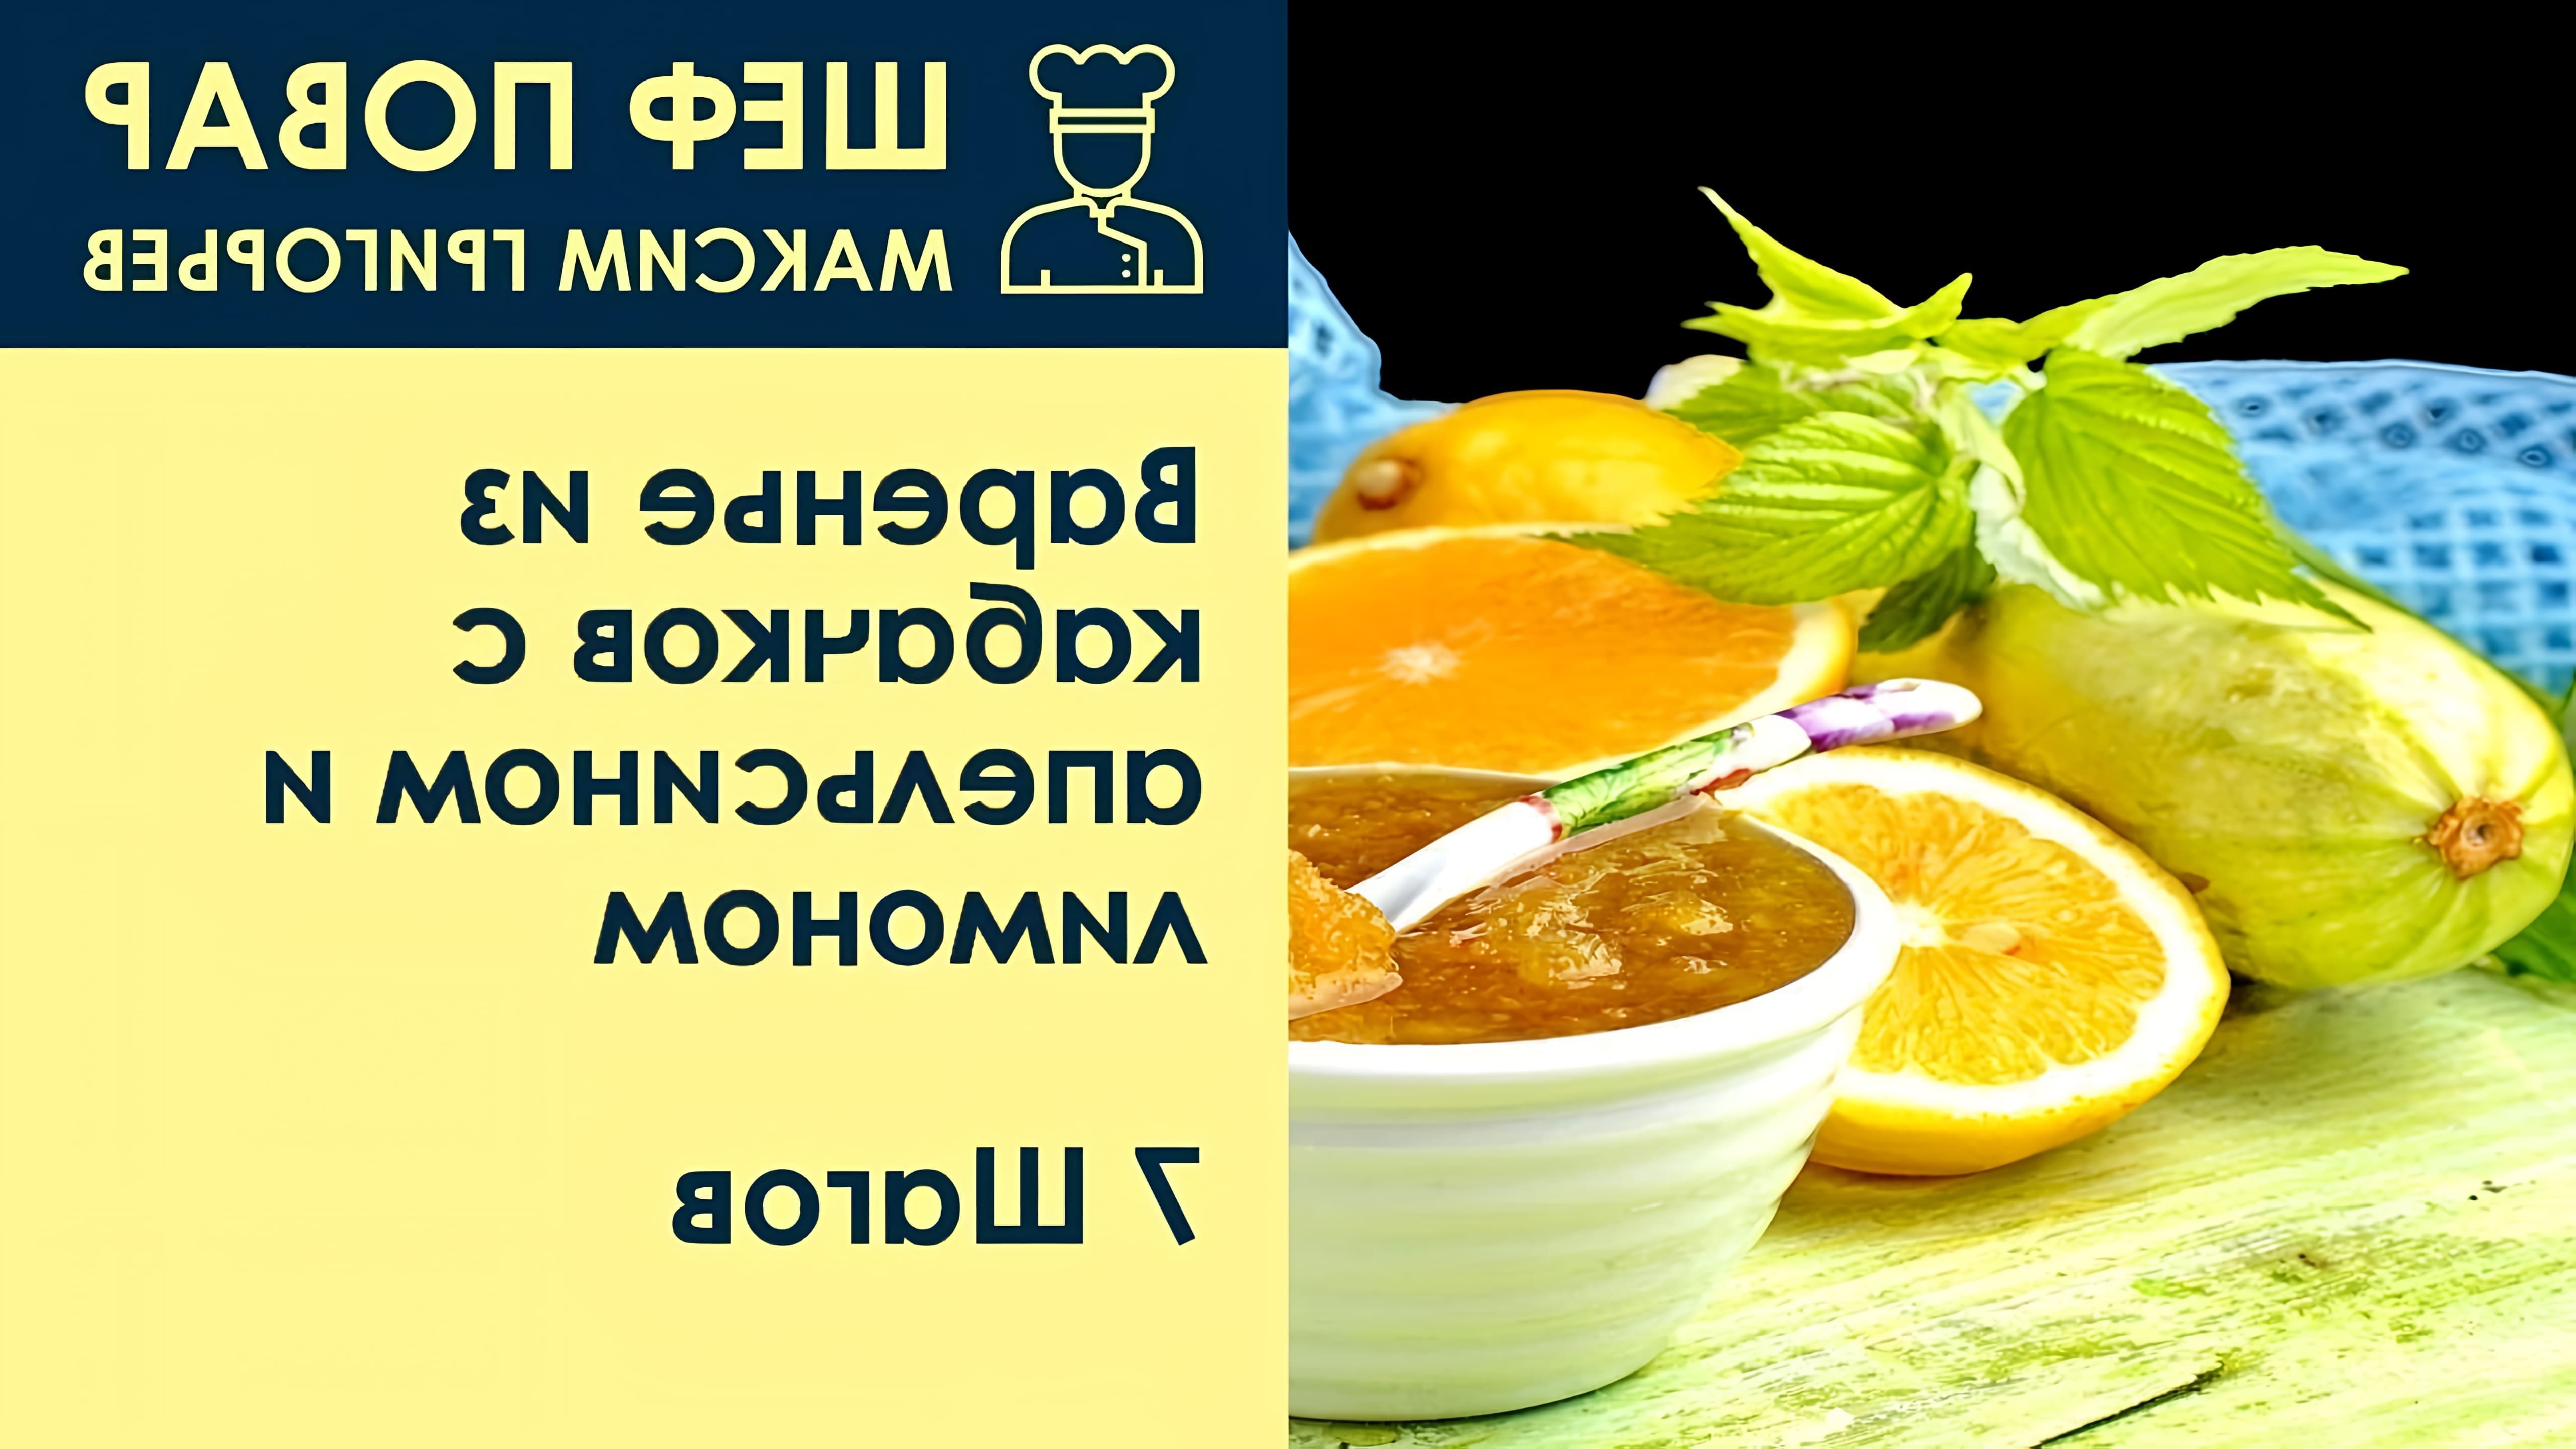 В данном видео шеф-повар Максим Григорьев демонстрирует рецепт приготовления варенья из кабачков с апельсином и лимоном